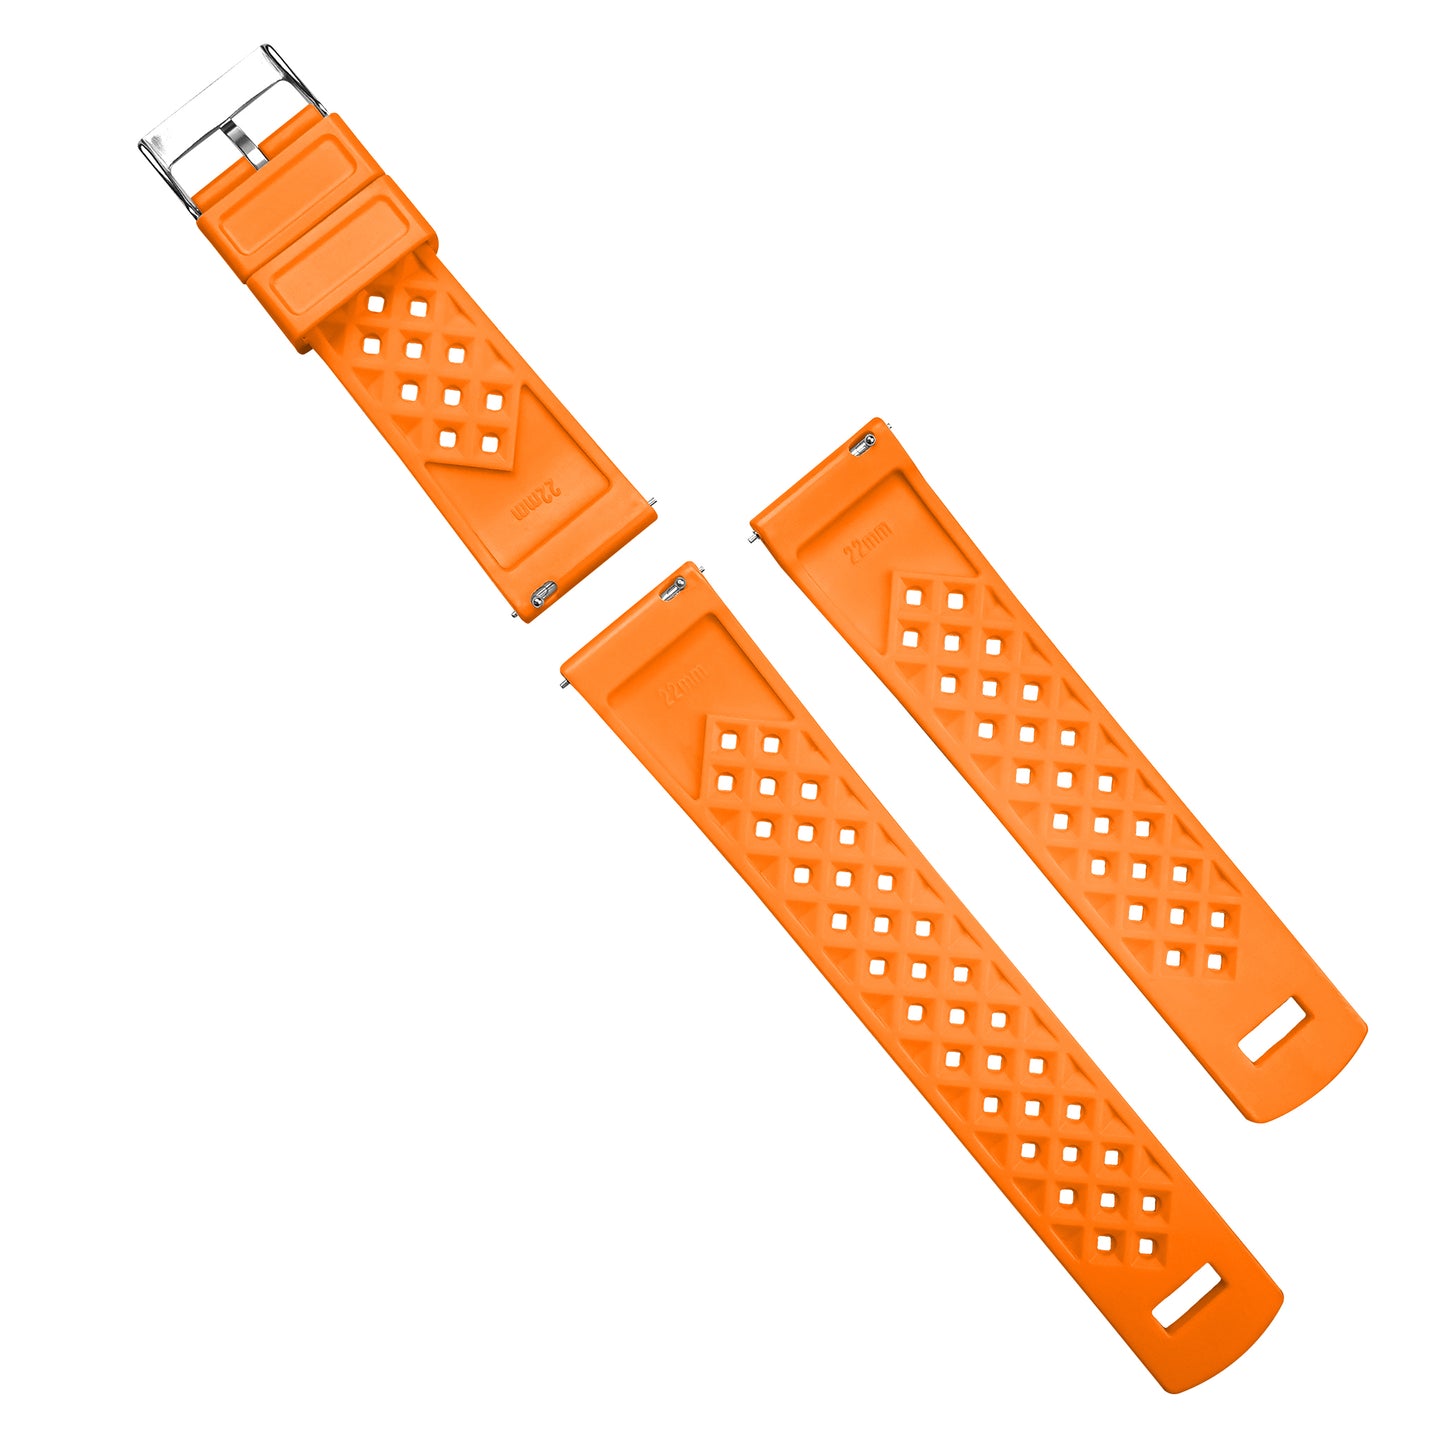 Amazfit Bip Tropical Style Orange Watch Band